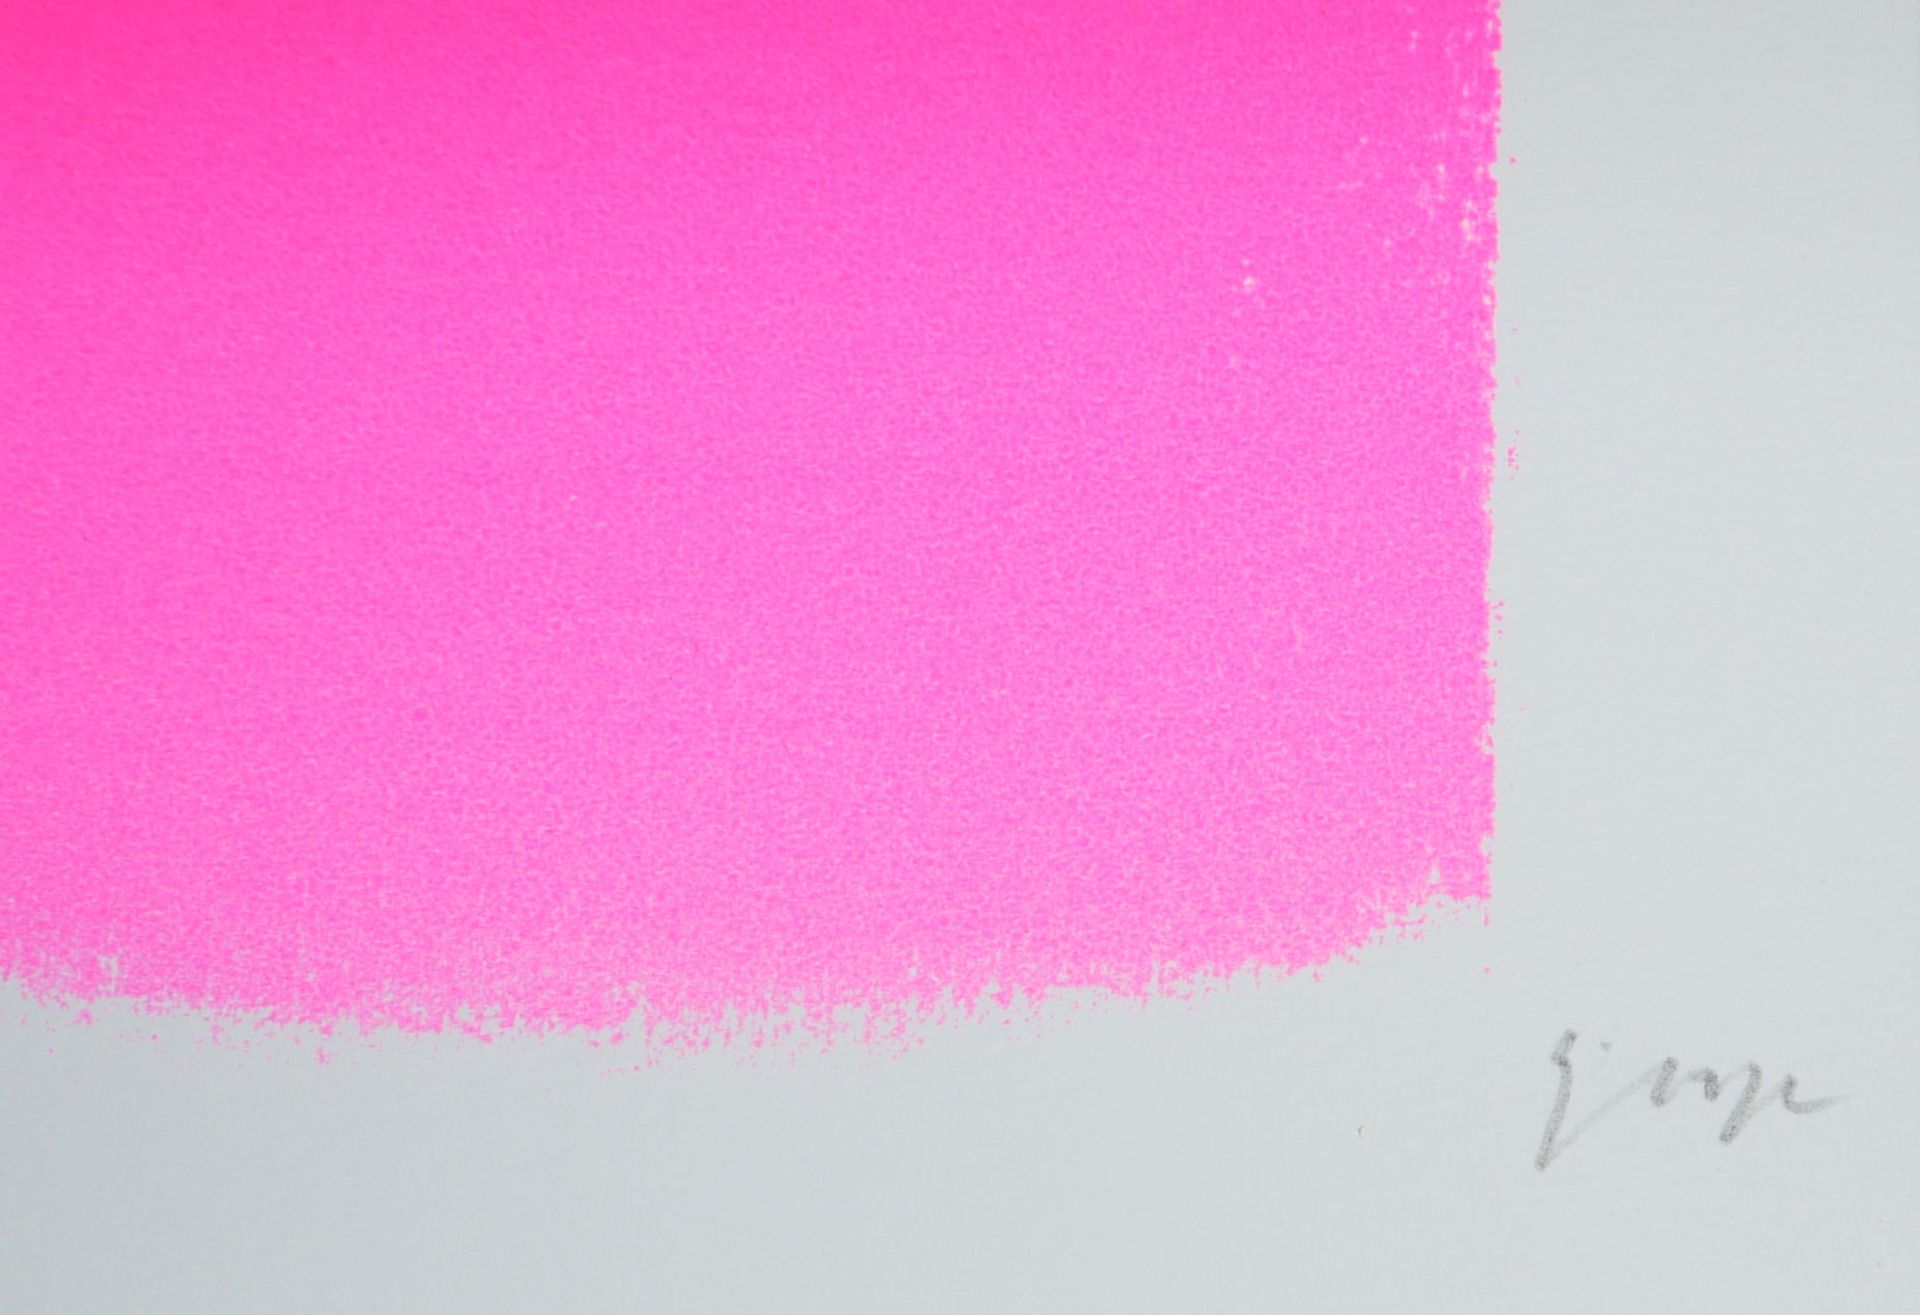 Rupprecht Geiger, Neon-Pink, Farbserigrafie, 1966 - Bild 2 aus 2